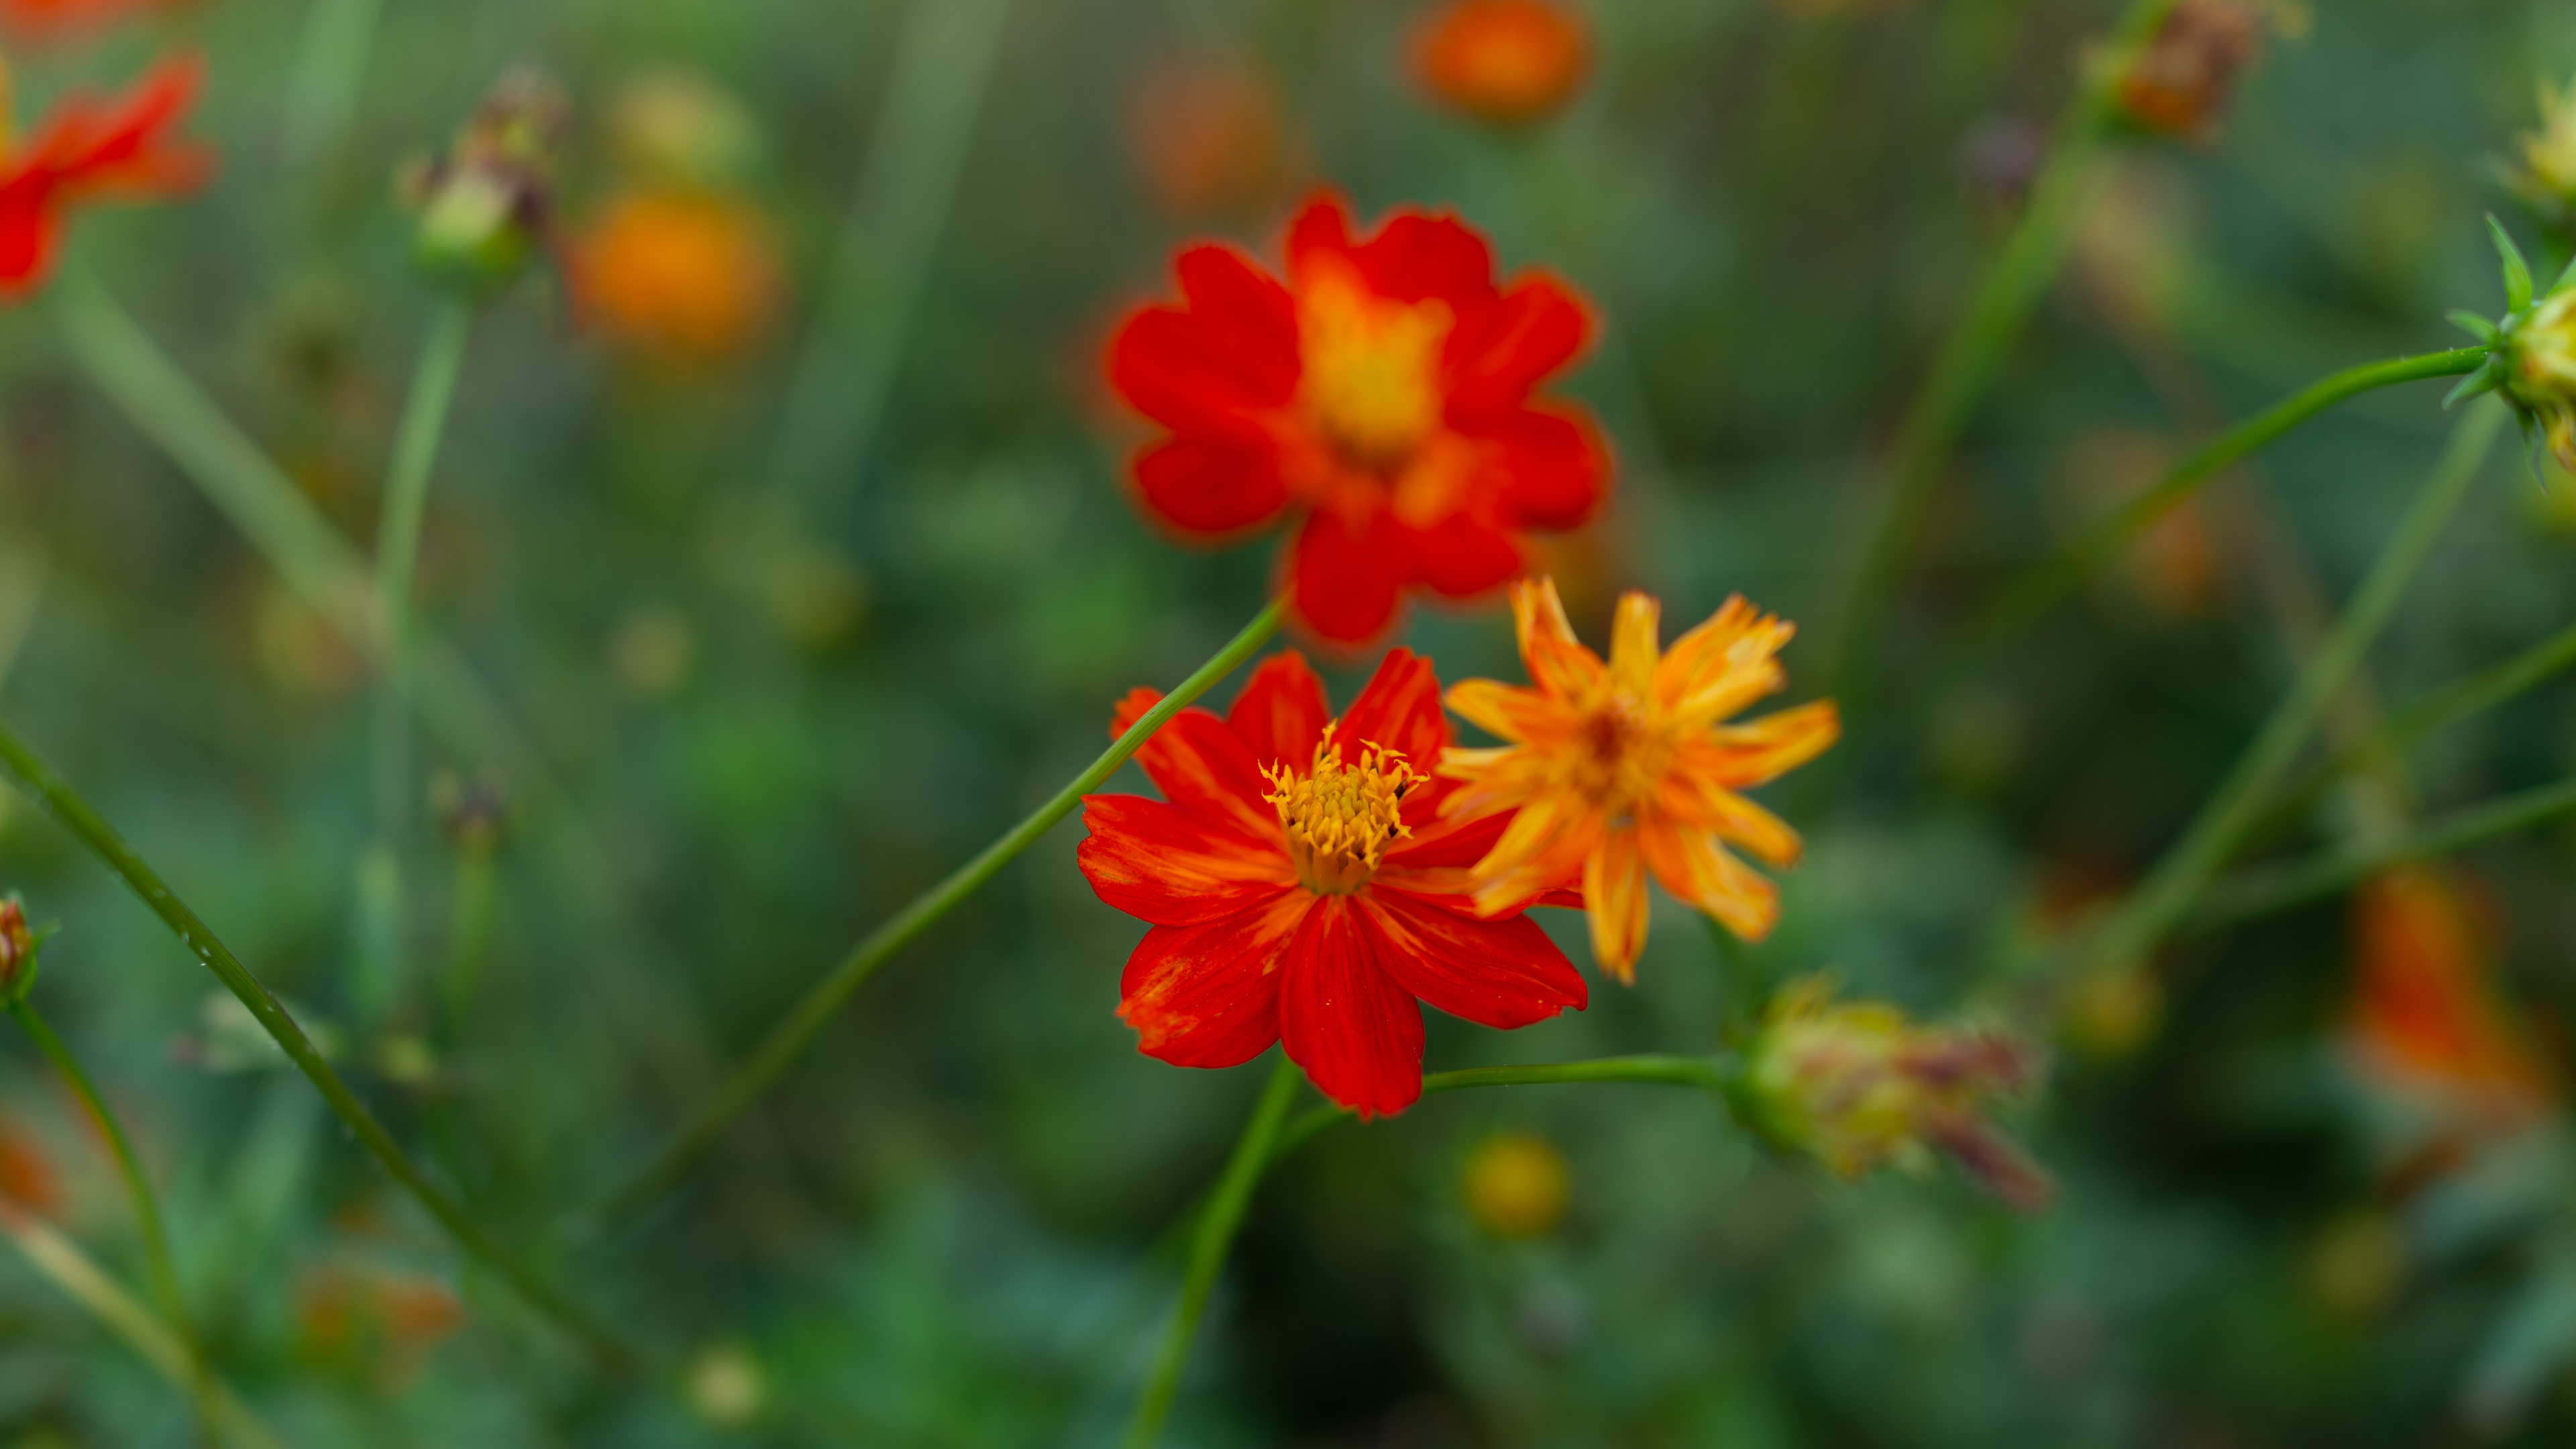 Red Flower in Tilt Shift Lens. Wallpaper in 3840x2160 Resolution